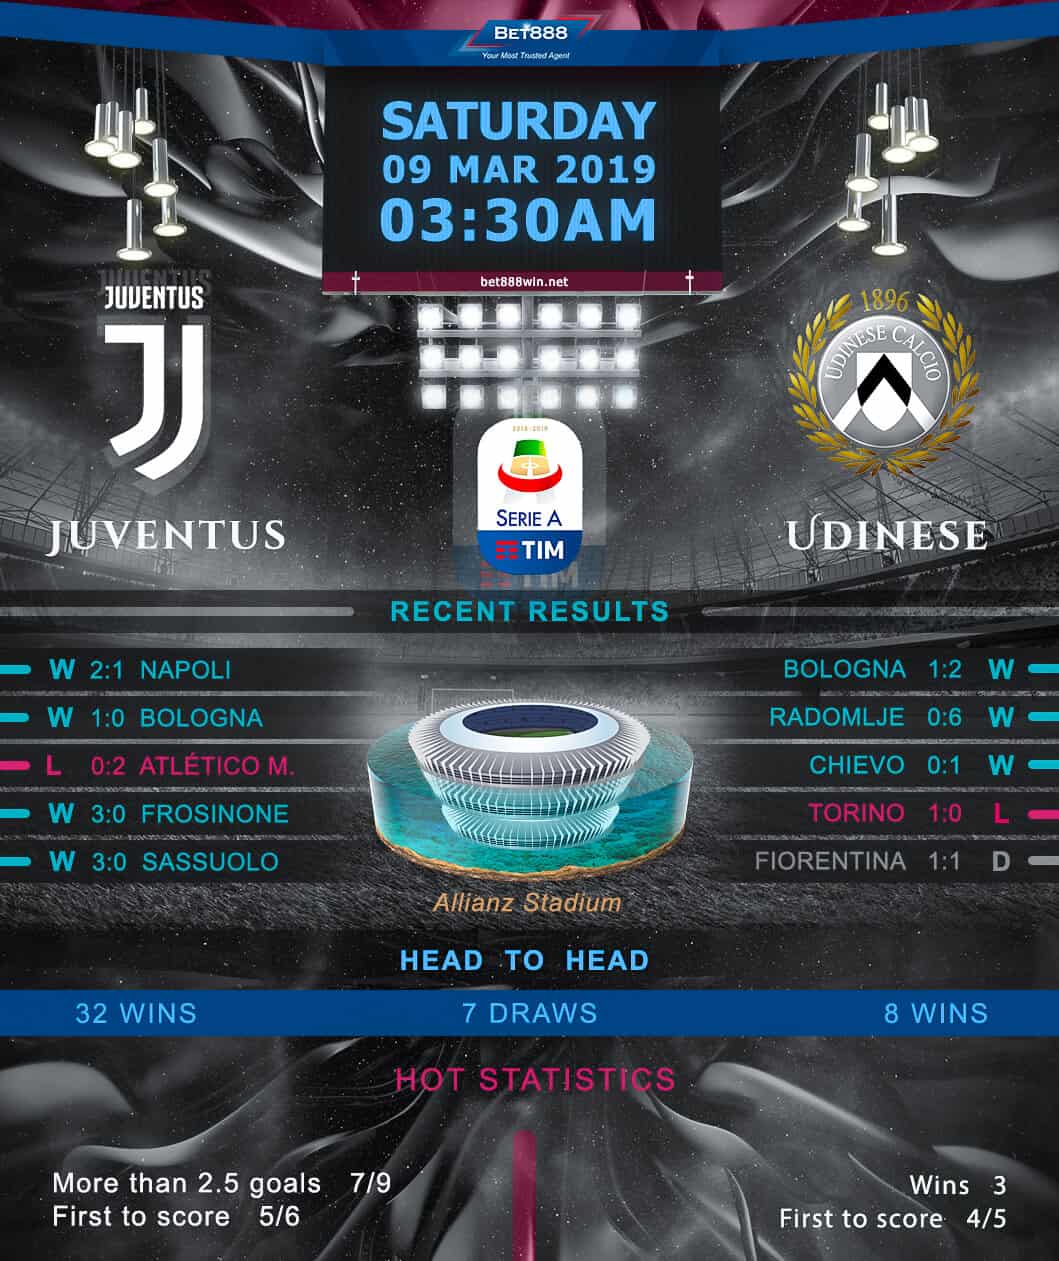 Juventus vs Udinese 09/03/19